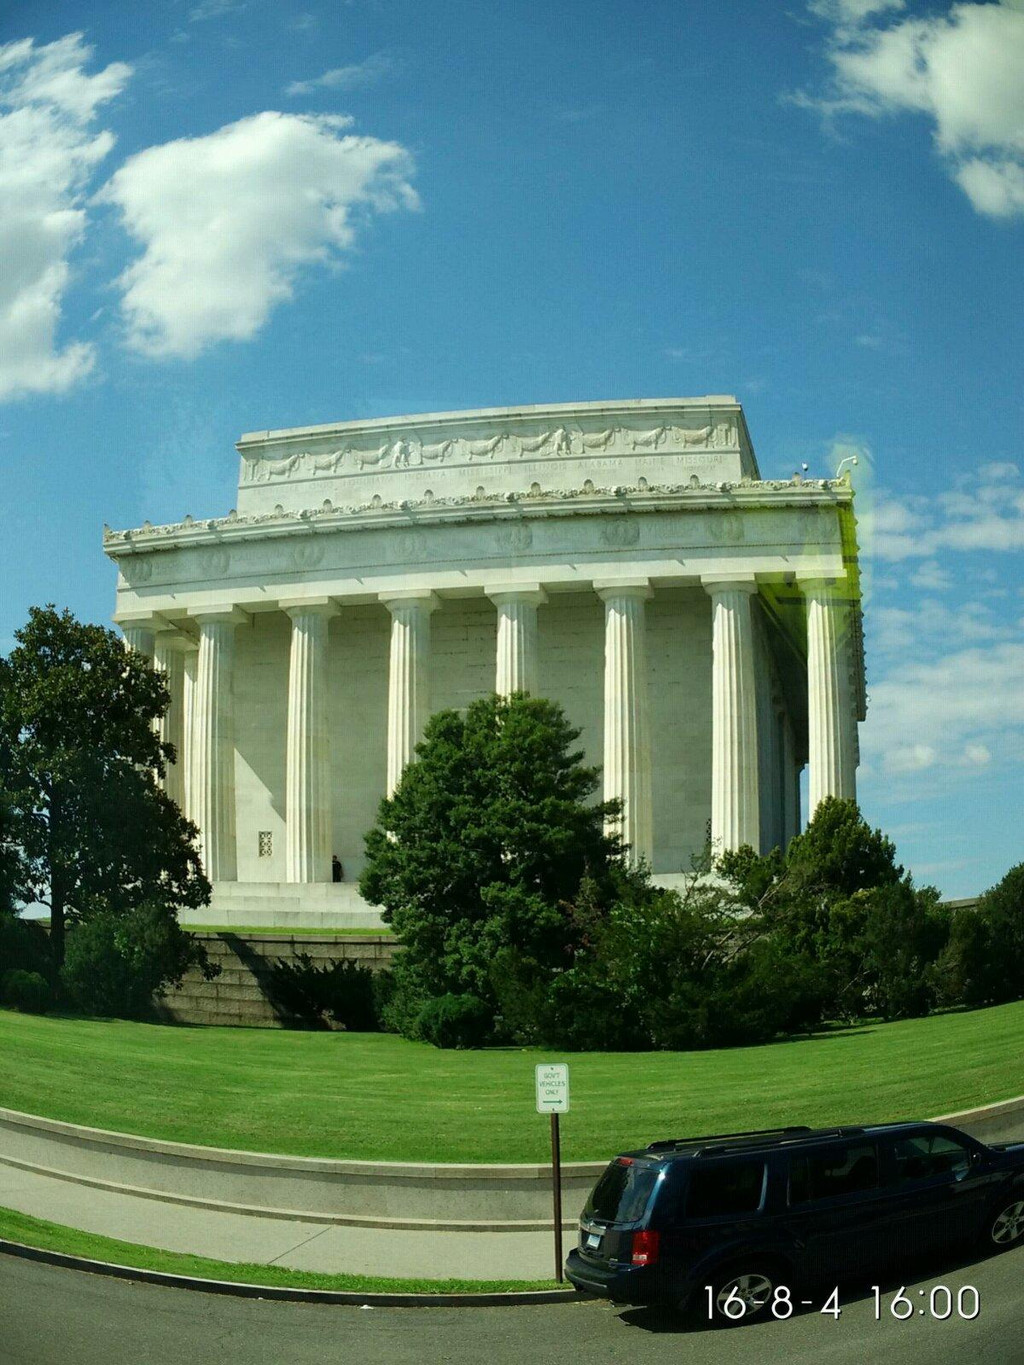 的塑像及华盛顿市标志,为纪念美国第十六届总统亚伯拉罕·林肯而建